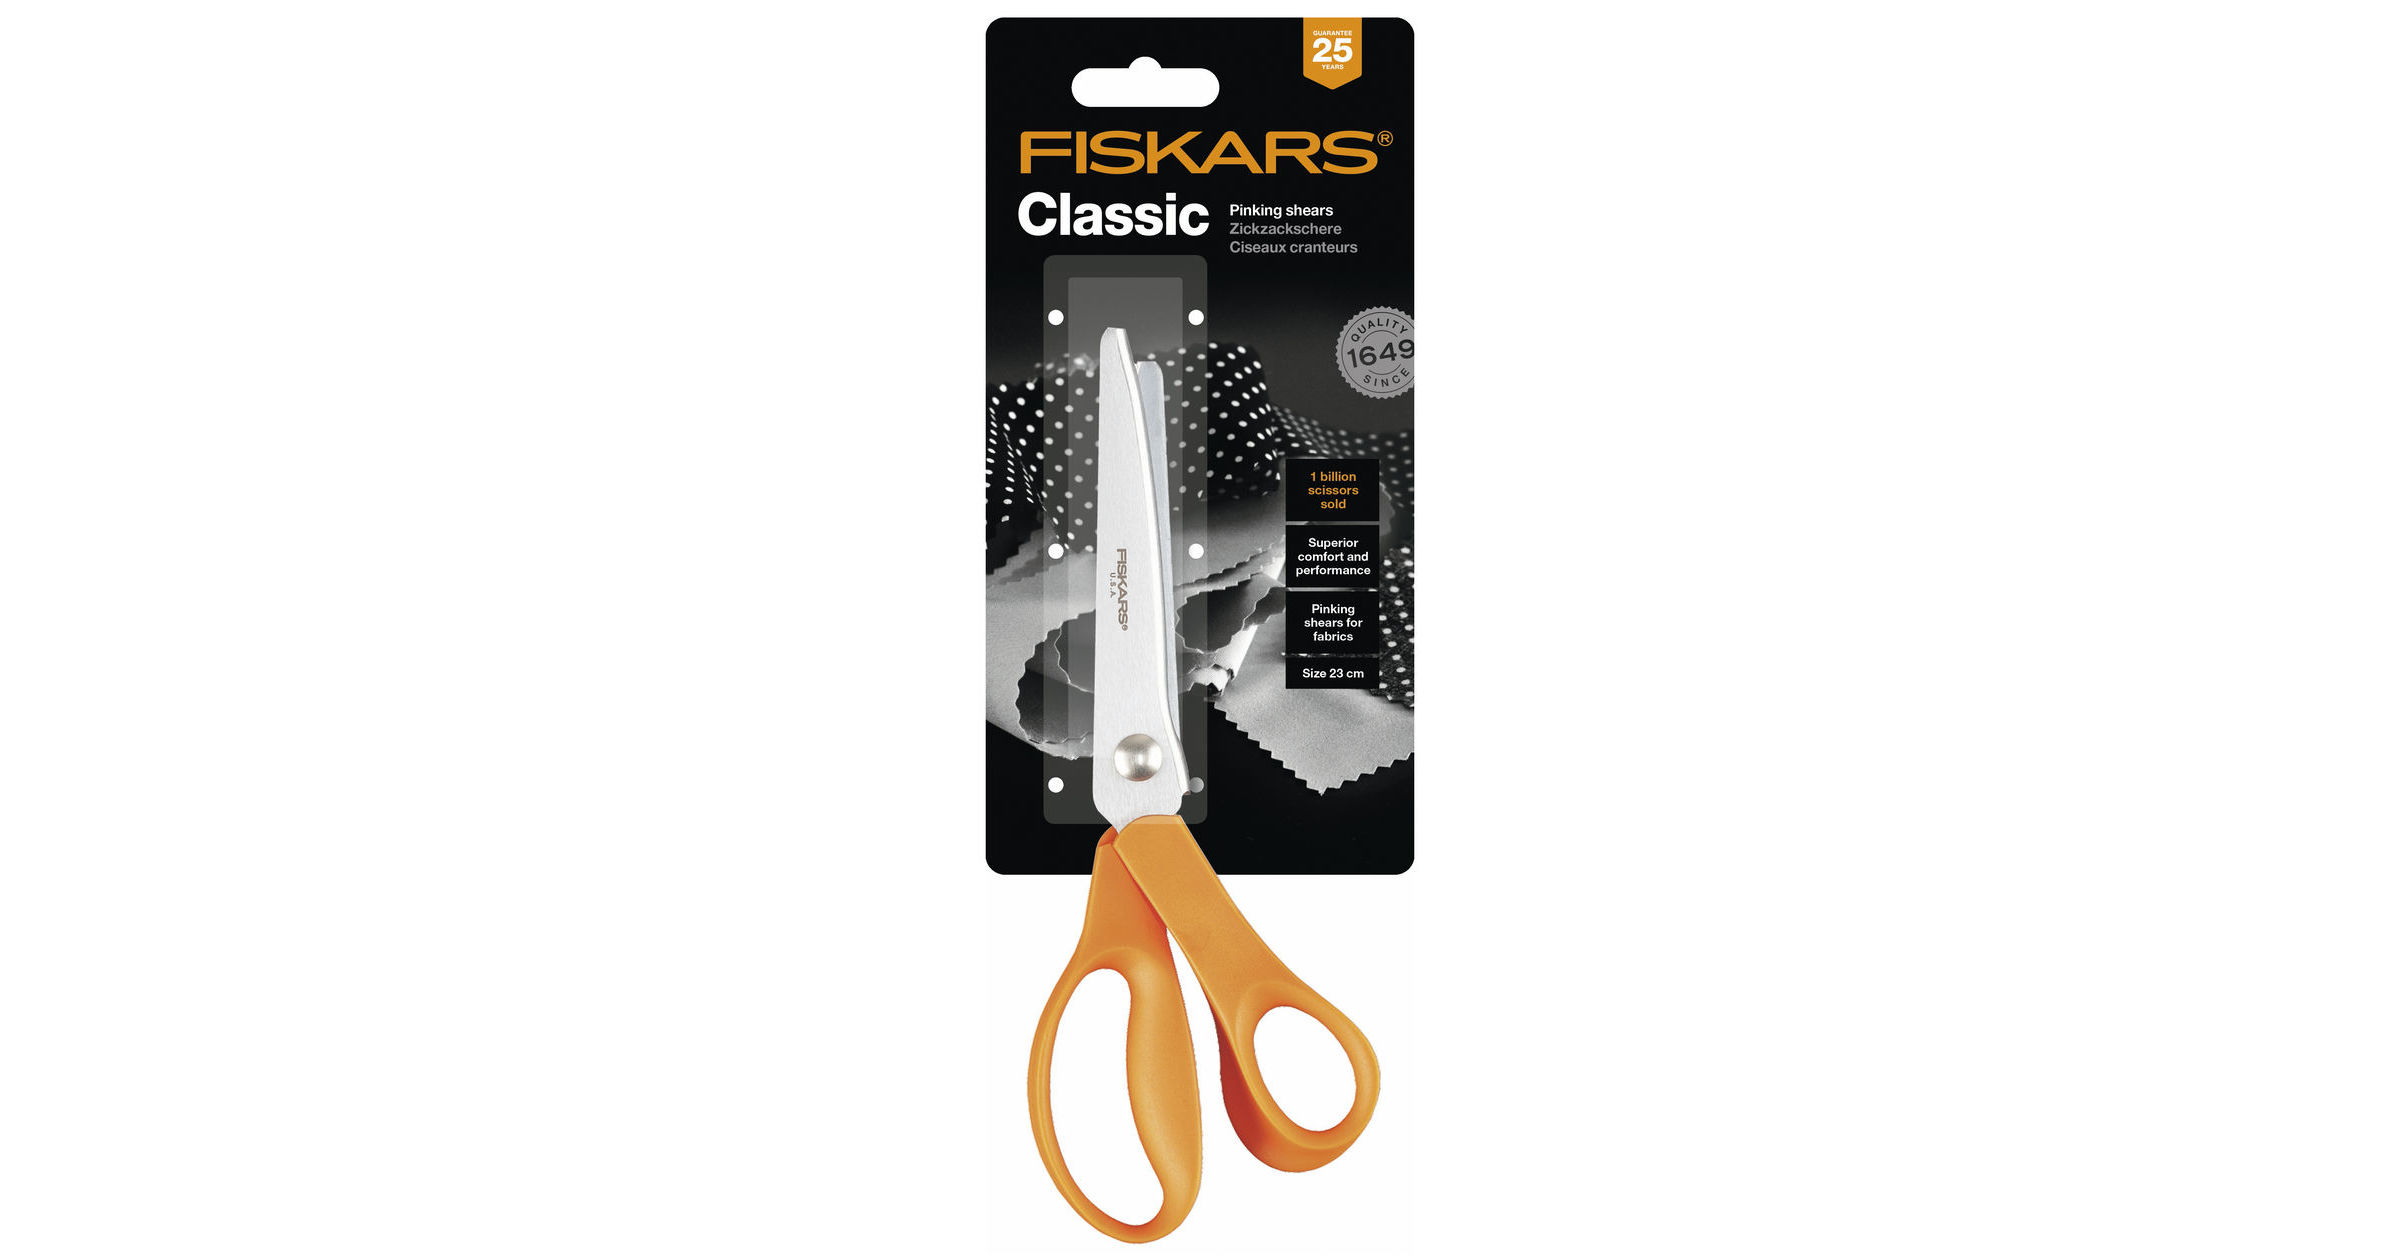 Fiskars Classic Pinking Scissors 23 cm